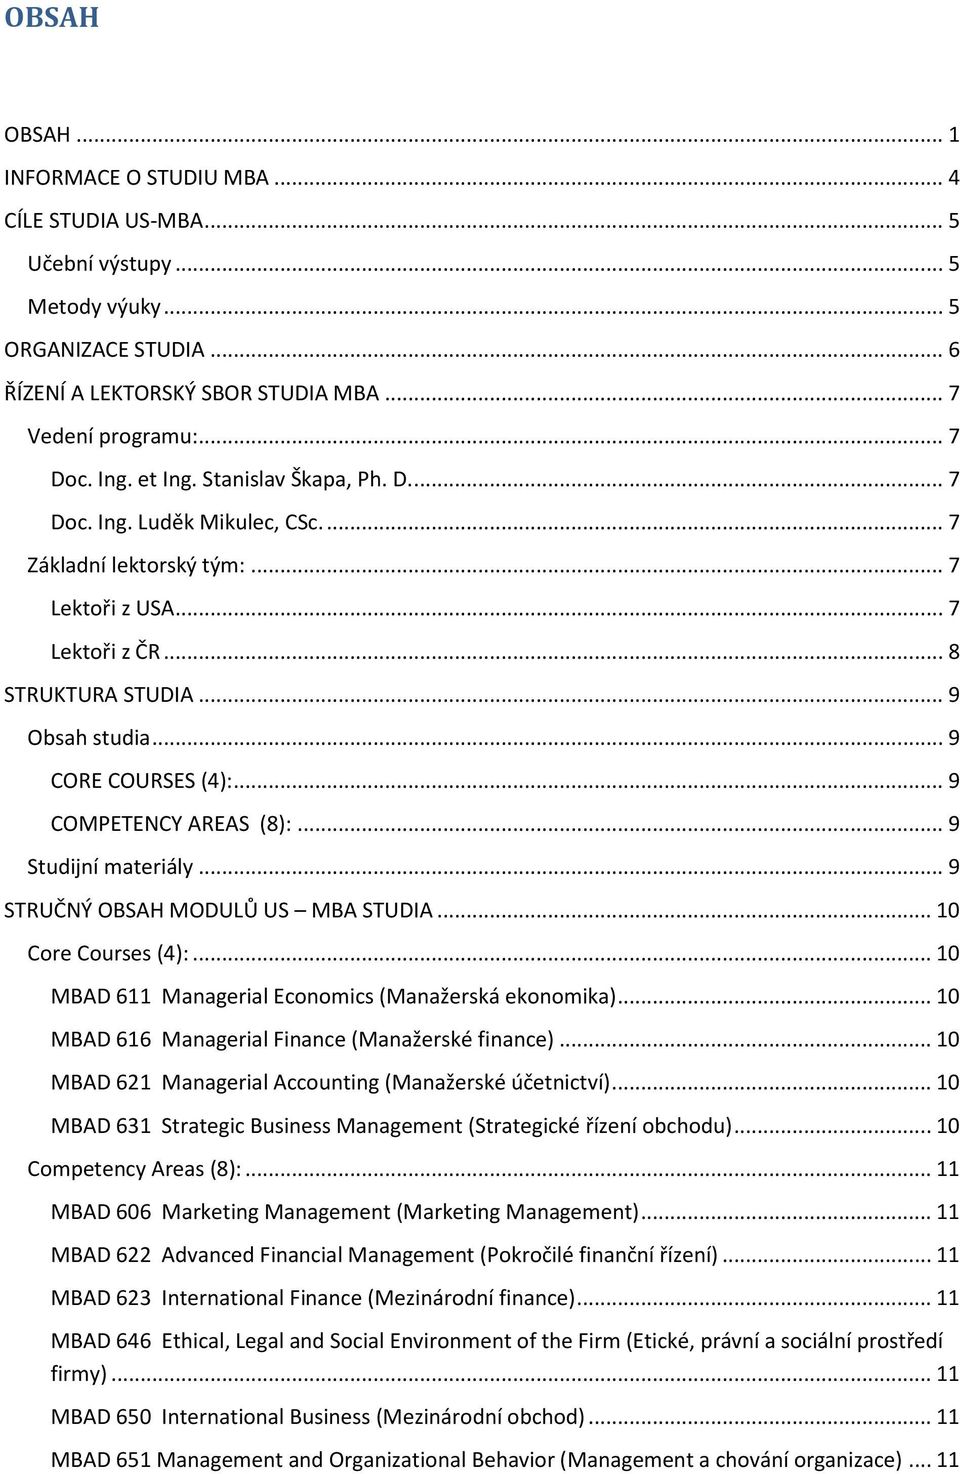 .. 9 COMPETENCY AREAS (8):... 9 Studijní materiály... 9 STRUČNÝ OBSAH MODULŮ US MBA STUDIA... 10 Core Courses (4):... 10 MBAD 611 Managerial Economics (Manažerská ekonomika).